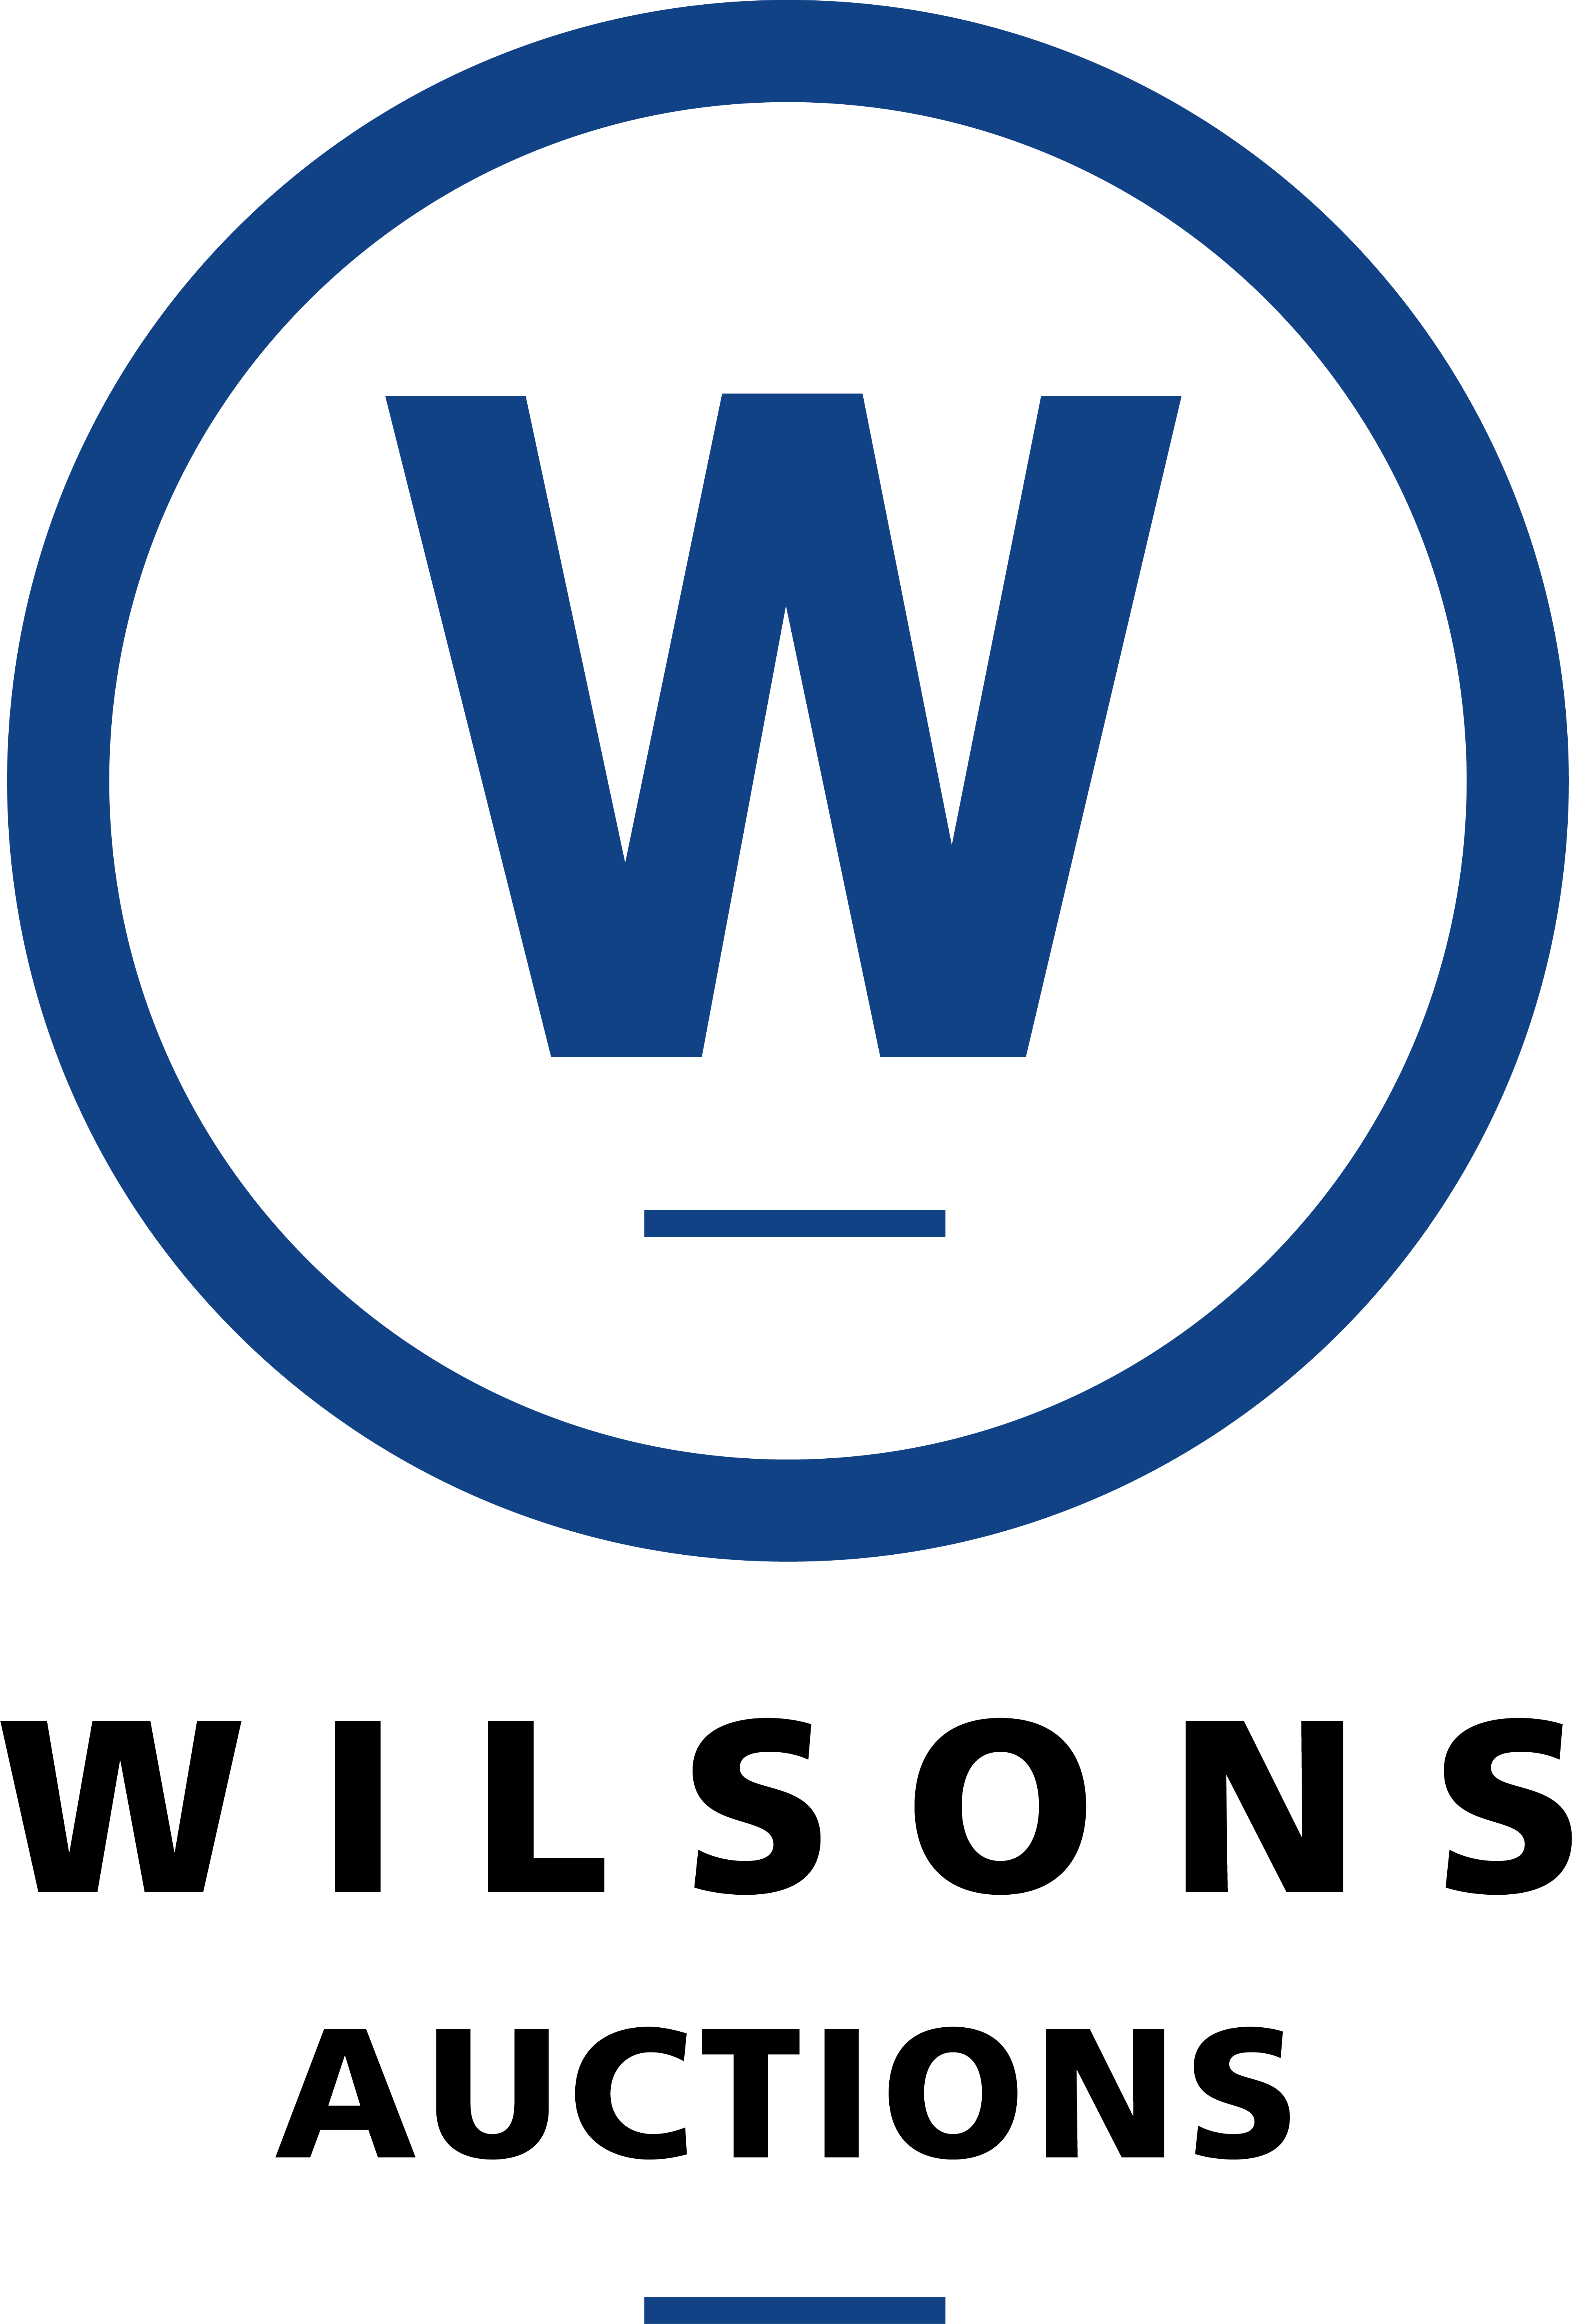 WA logo CMYK 500x500mm Blue